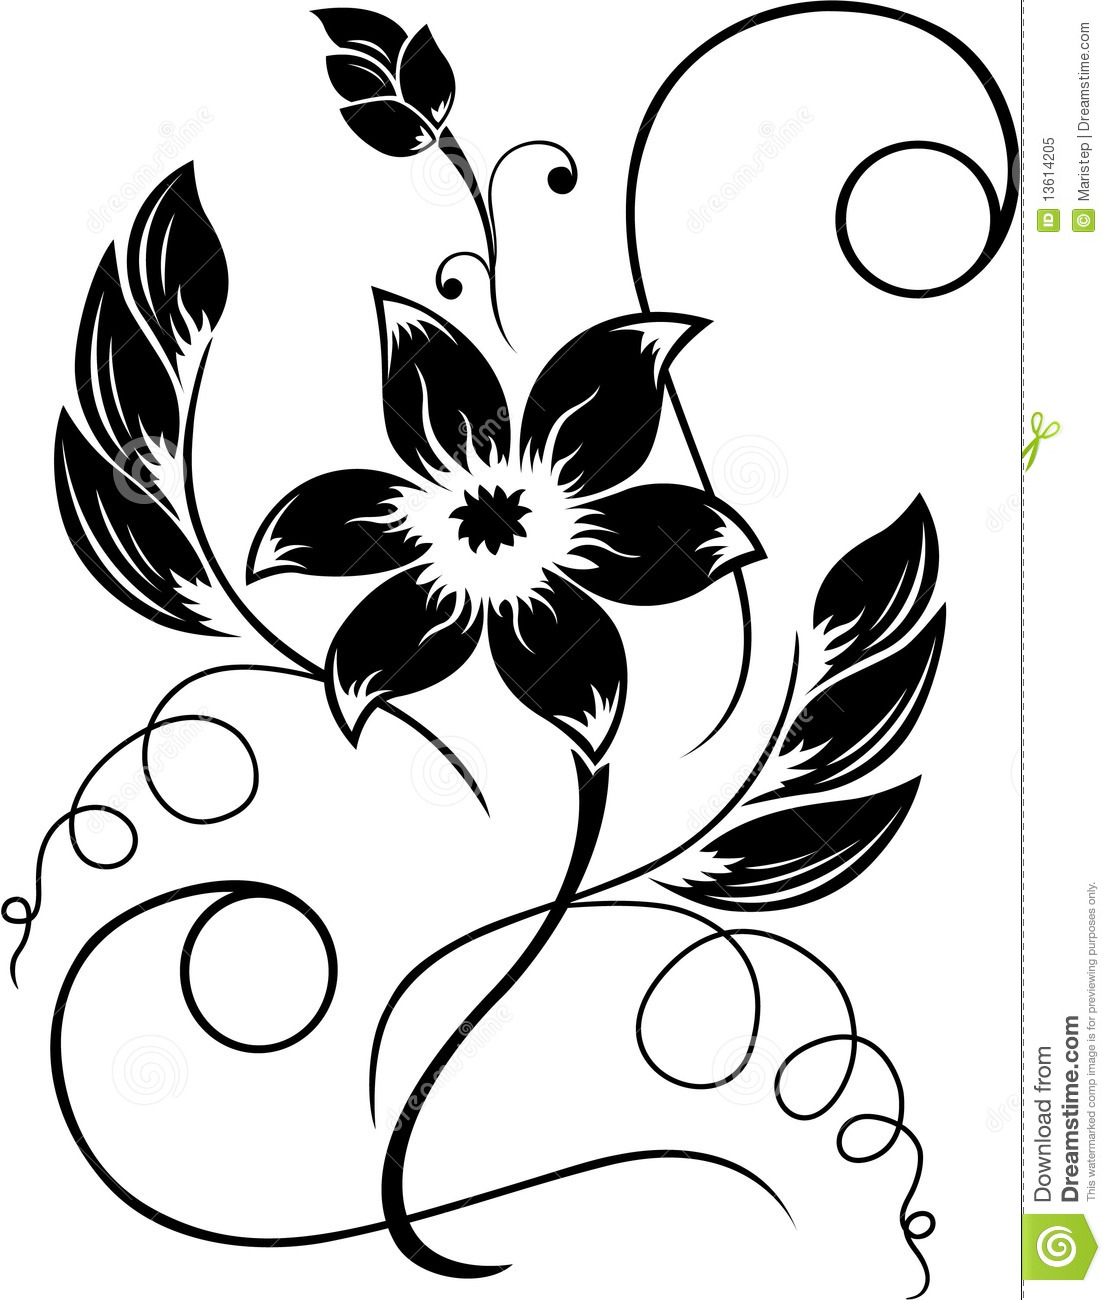 Flower black white.